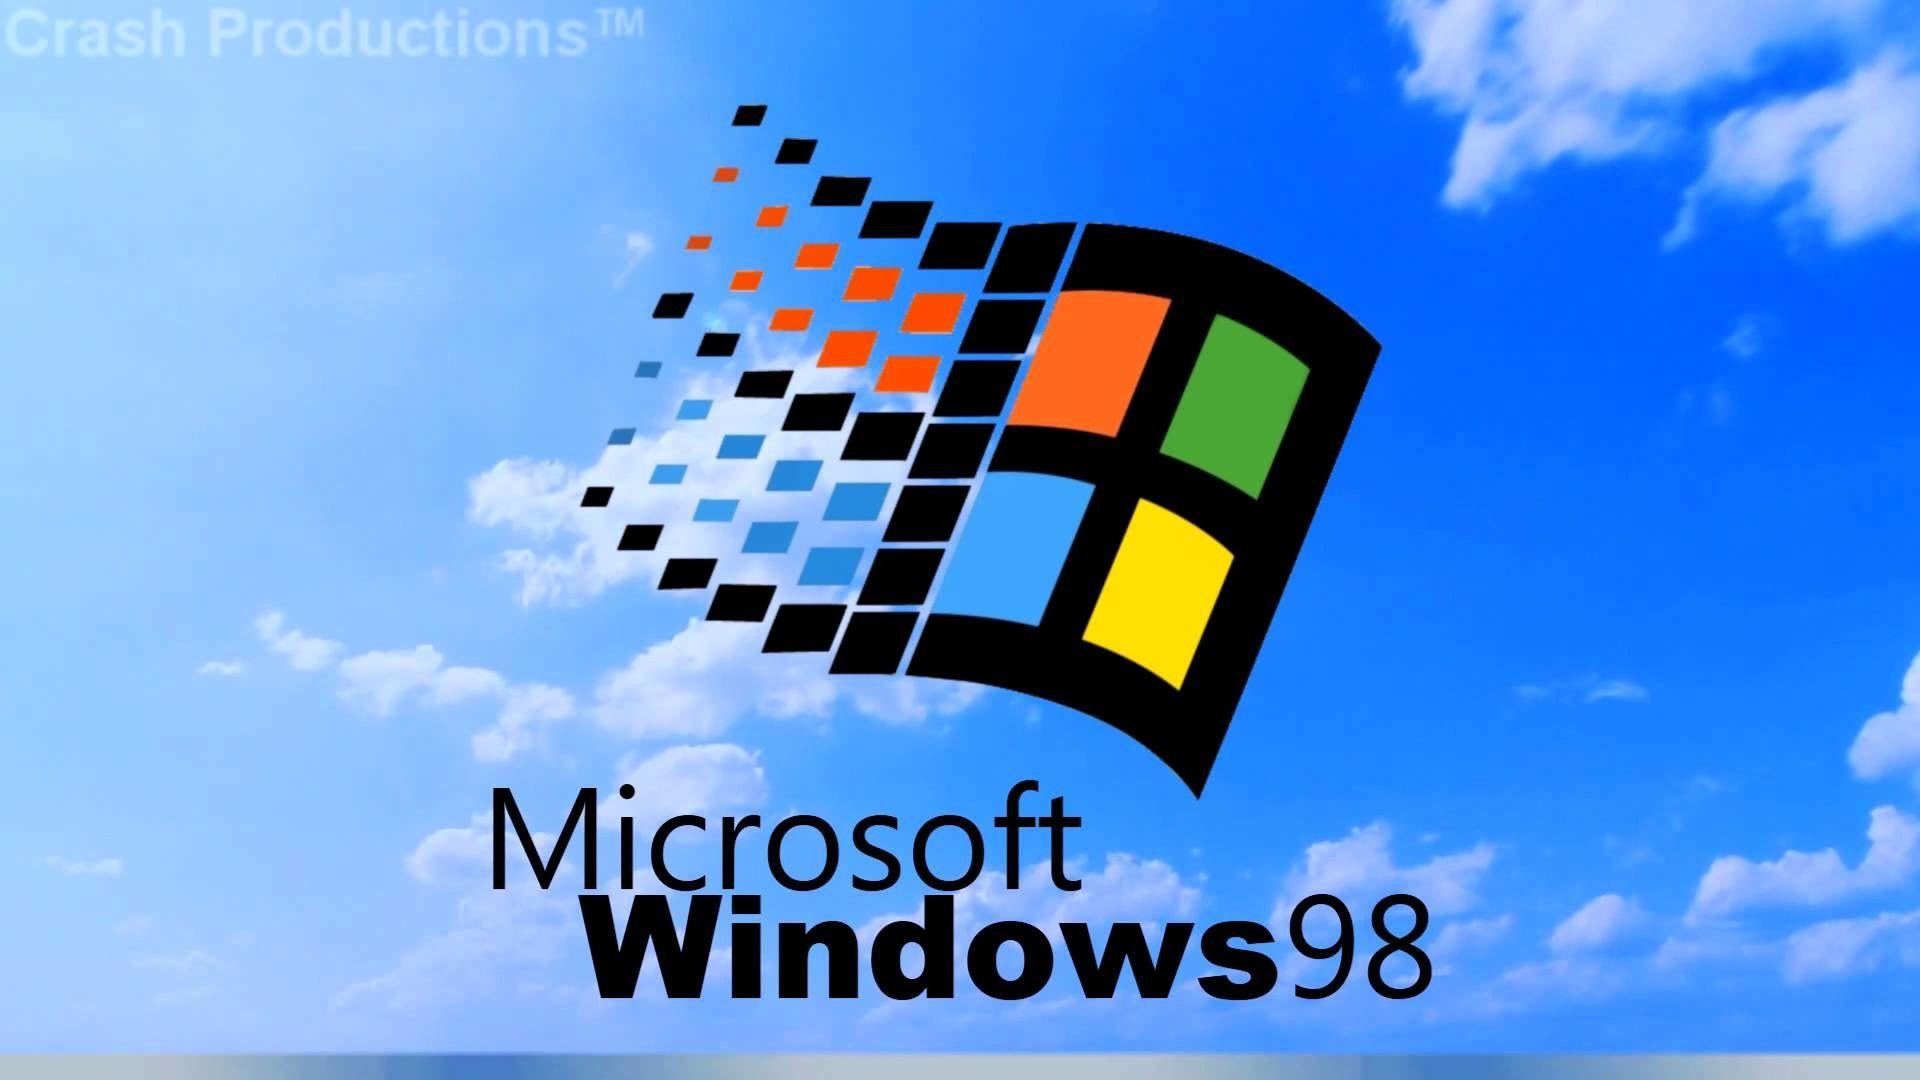 Bạn muốn có một hình nền miễn phí đẹp mắt trên máy tính của mình? Chúng tôi giới thiệu Hình nền Windows 98 HD miễn phí đầy cổ điển và đáng yêu này. Sự kết hợp hoàn hảo giữa màu sắc làm nổi bật cho hình ảnh này, ngay lập tức trở thành sự lựa chọn lý tưởng để làm hình nền cho máy tính của bạn.